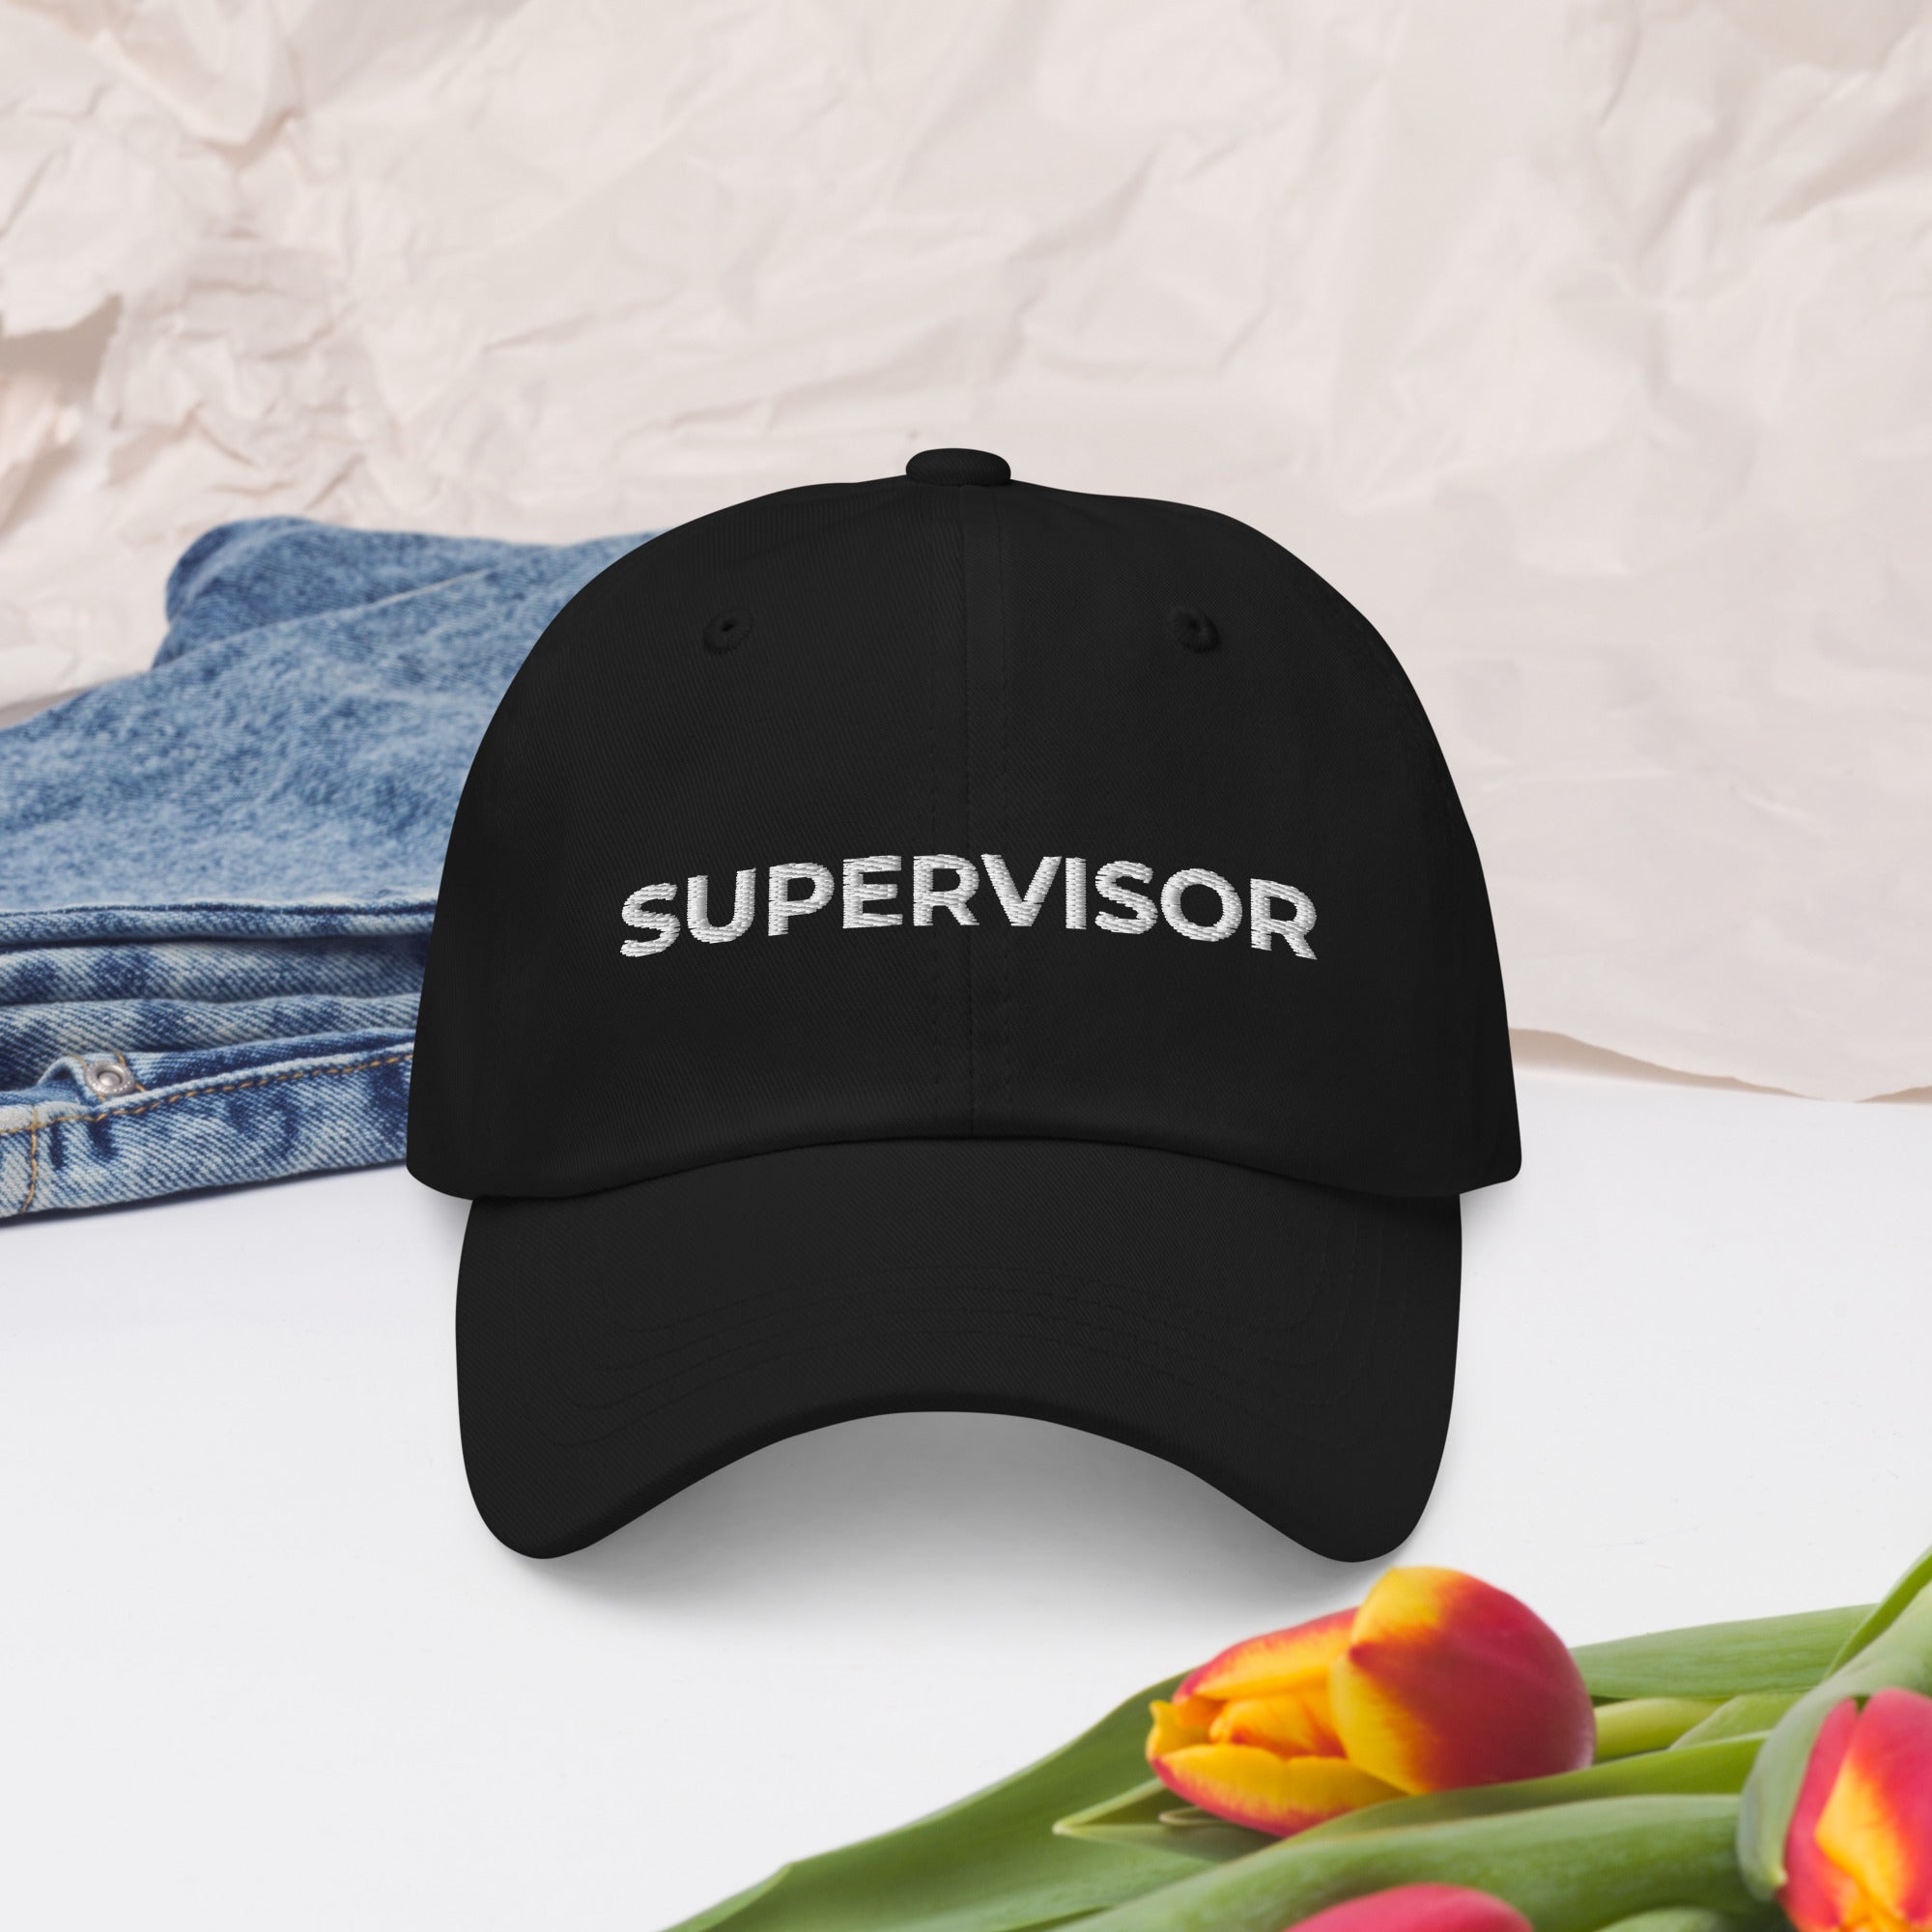 Supervisor Dad hat, Supervisor gift, Supervisor hat, Supervisor baseball cap, Funny Supervisor gift, Supervisor cap, Supervisor birthday hat